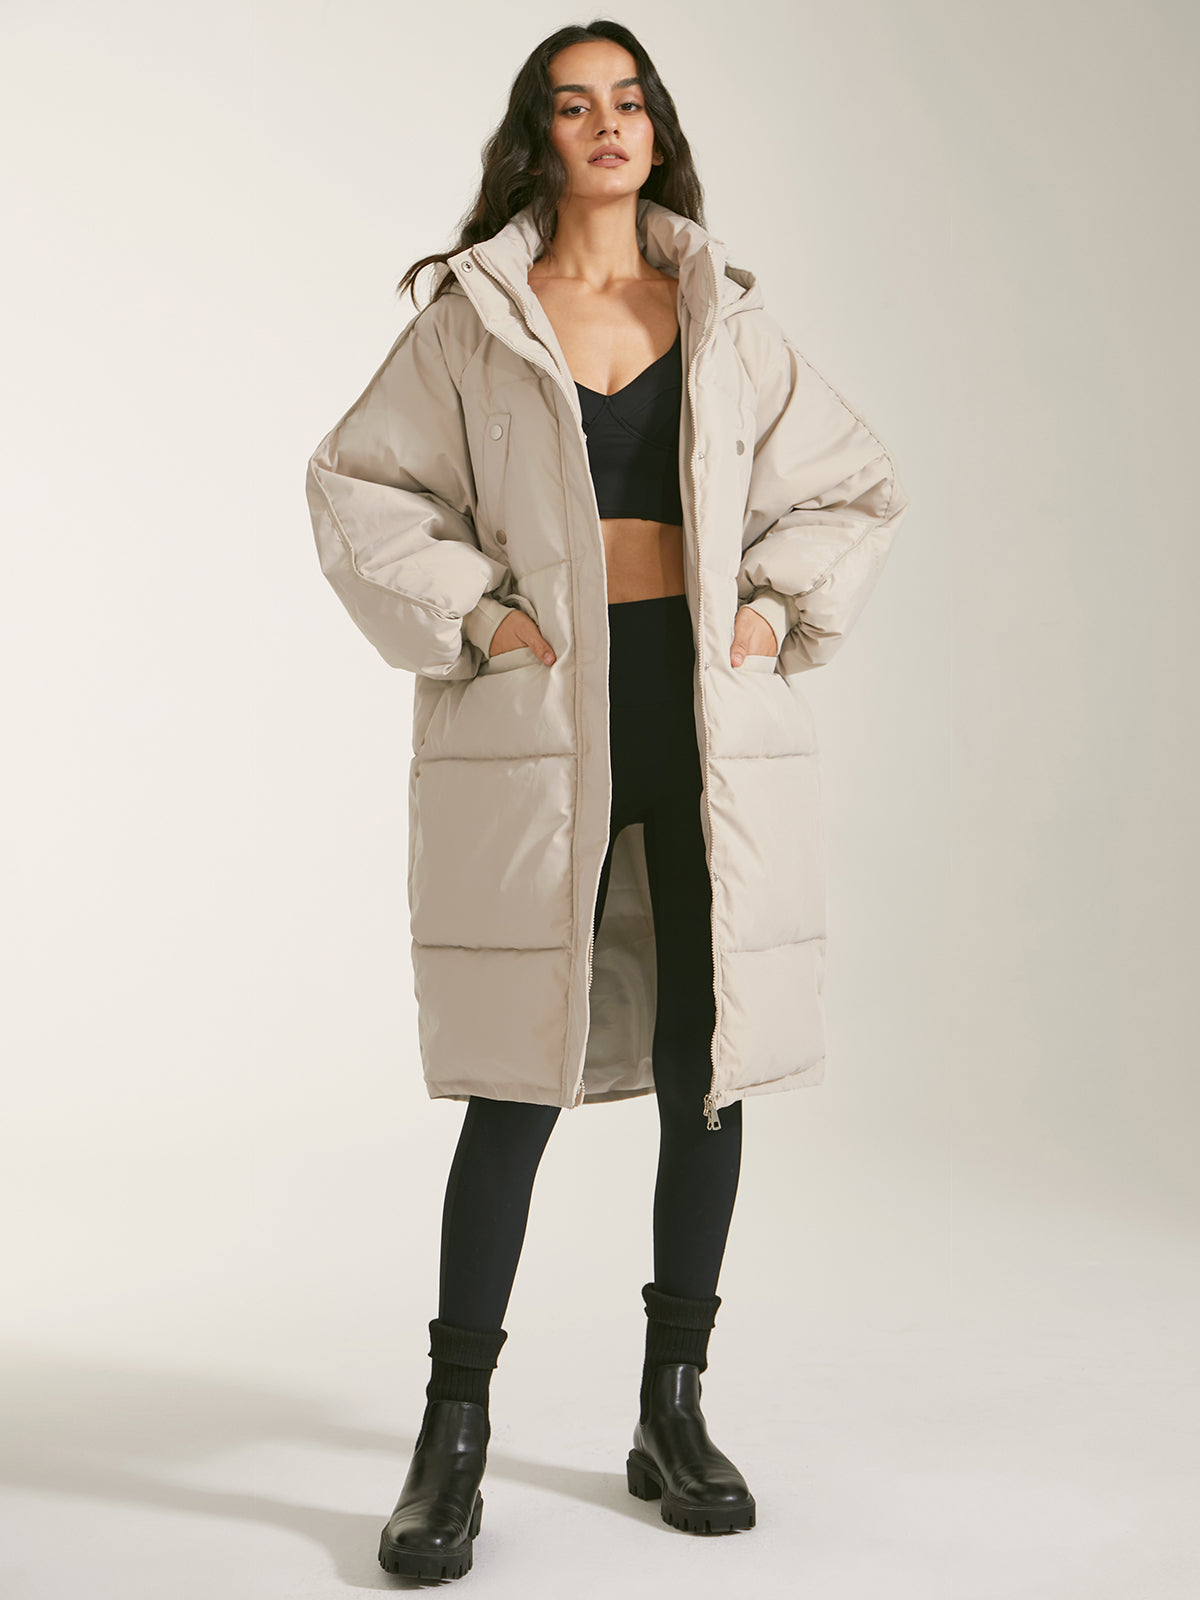 5 Women's Winter Coats To Keep You Cozy & Fashion